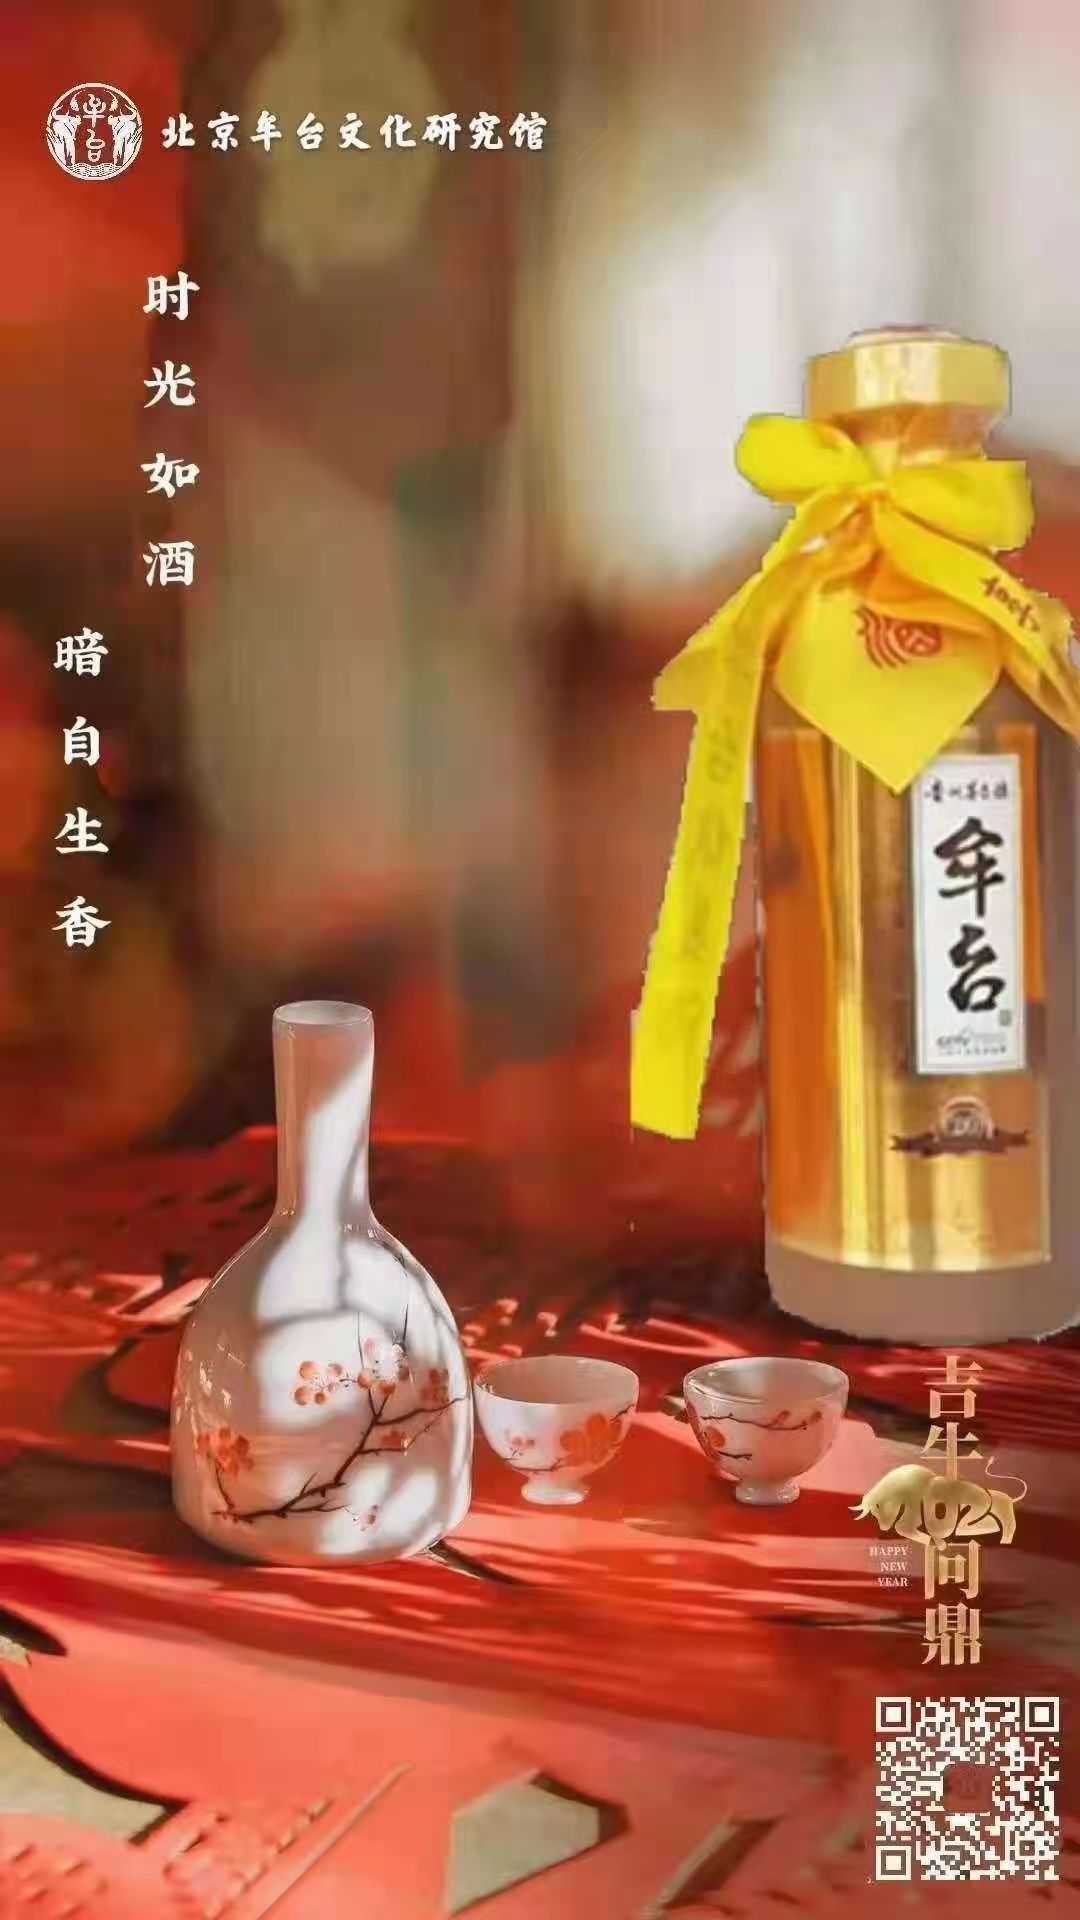 贵州茅台镇著名品牌牟台酒企业歌曲《美酒牟台》隆重问世(图3)